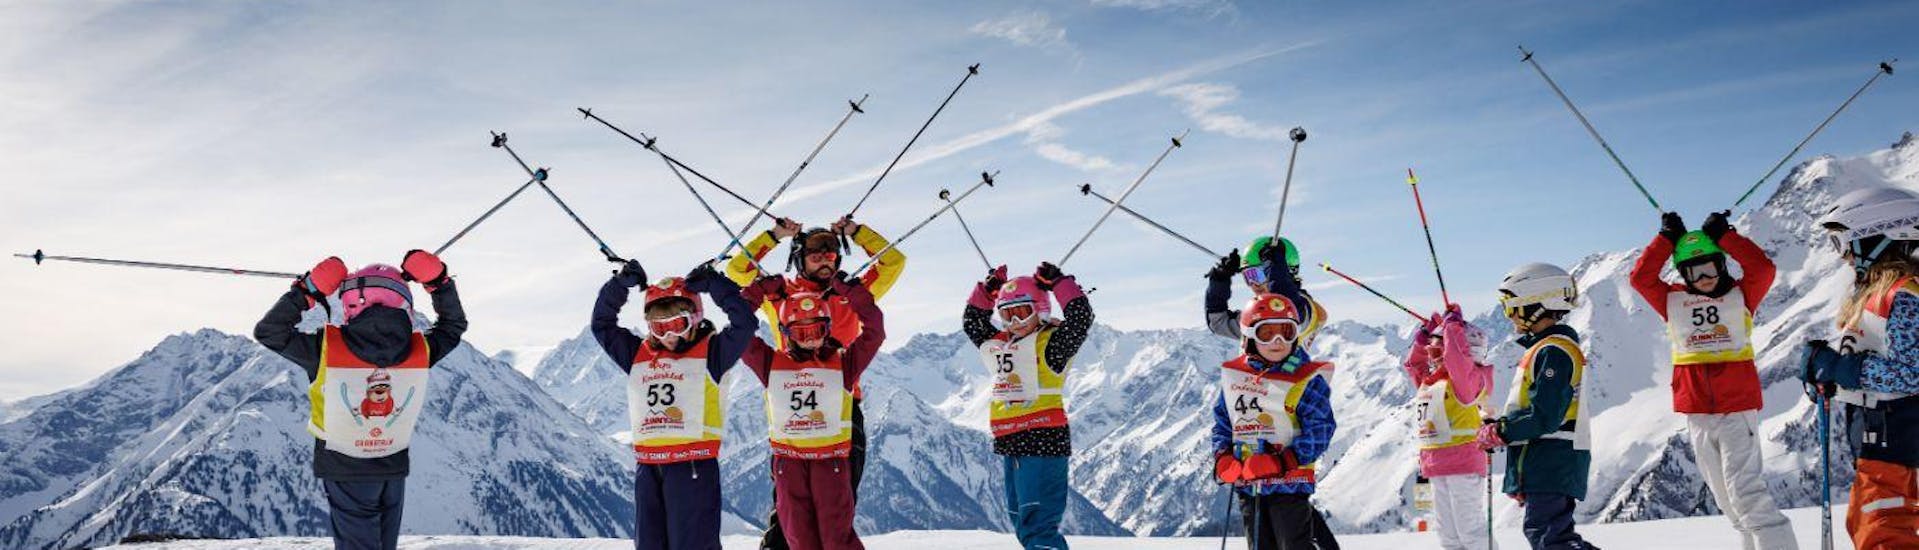 Skilessen voor kinderen (4-14 jaar) + skiverhuurpakket voor beginners.